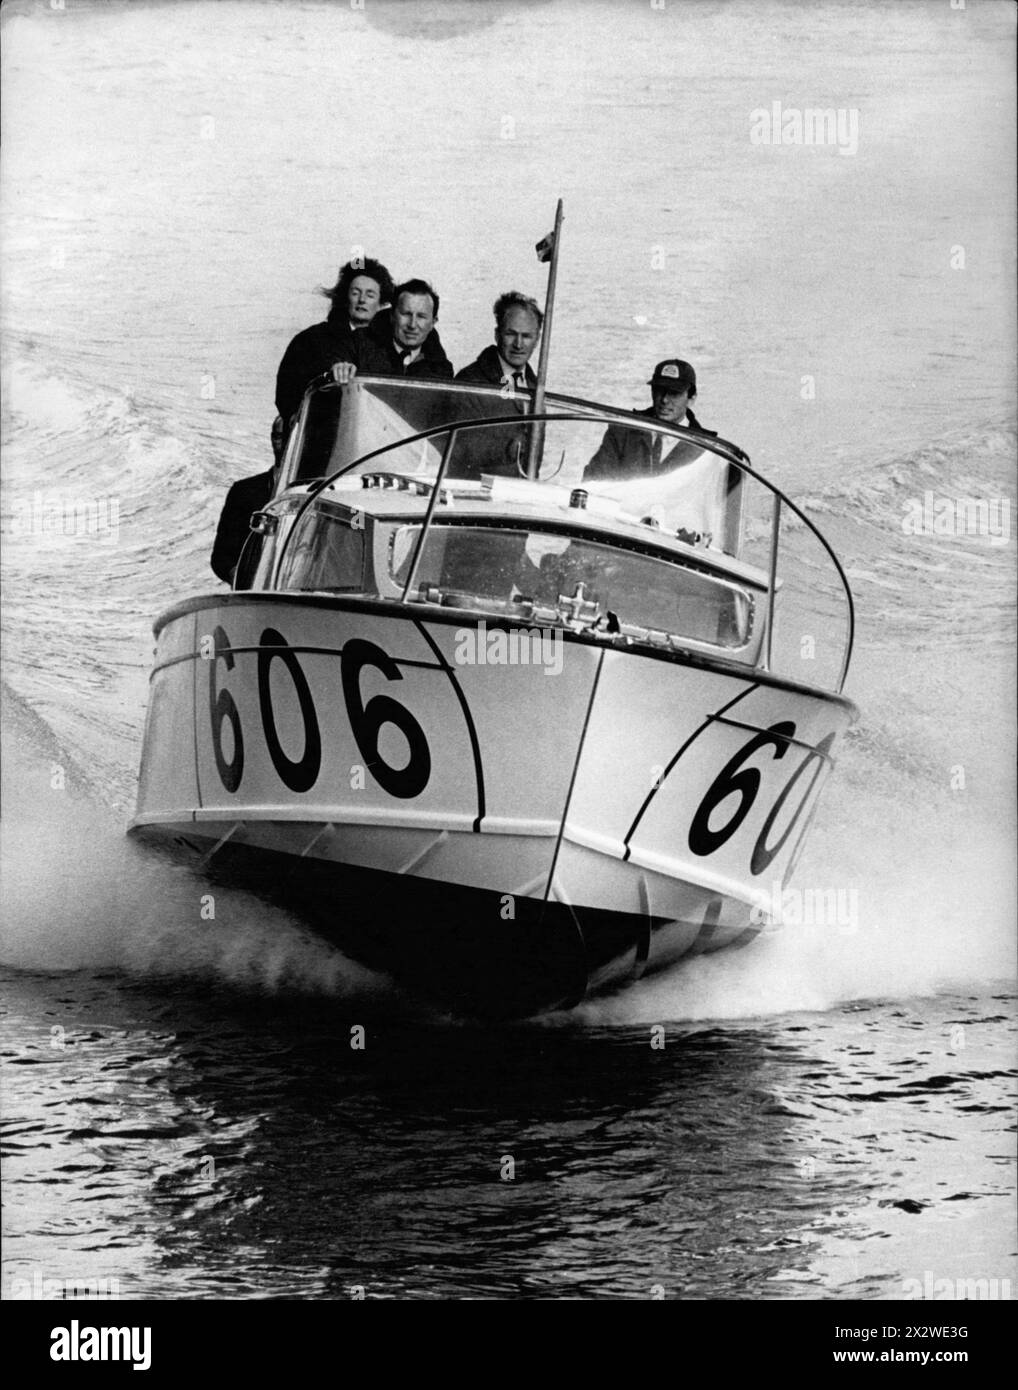 4 aprile 1969, Londra, Inghilterra: Ford Powerboat team L-R: LADY AITKEN, DEREK MORRIS, PETER TWISS e JOHN FREEMAN a bordo del 606 The 'Seaspray' che sfreccia lungo il Tamigi. L'obiettivo di Ford per Powerboat Honors Ford ha formato un team offshore di motoscafi. Sarà composto da quattro motoscafi diesel Fairey Huntsman gemellati turbocompressi, e il loro obiettivo principale sarà la gara di motoscafi Daily Telegraph BP Round Britain che partirà il 26 luglio da Portsmouth. Uno sarà comandato da Lady Aitken, moglie di Sir Aitken, presidente della Beaverbrook Newspapers, e un altro sarà comandato da Peter Twiss, una forma Foto Stock